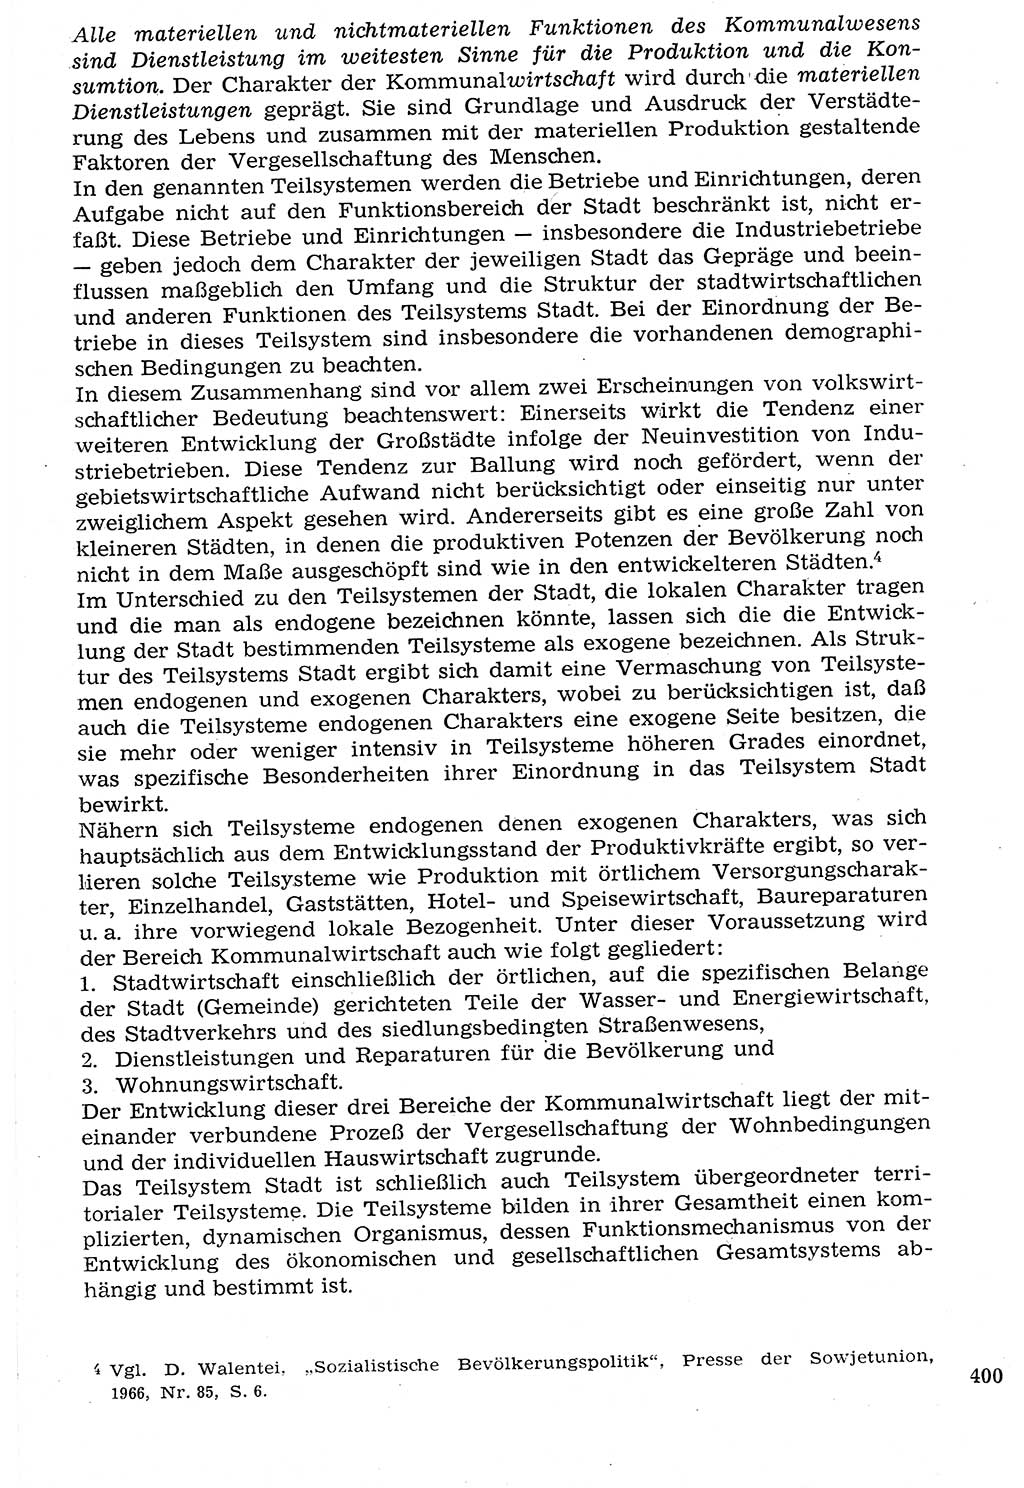 Staat und Recht (StuR), 17. Jahrgang [Deutsche Demokratische Republik (DDR)] 1968, Seite 400 (StuR DDR 1968, S. 400)